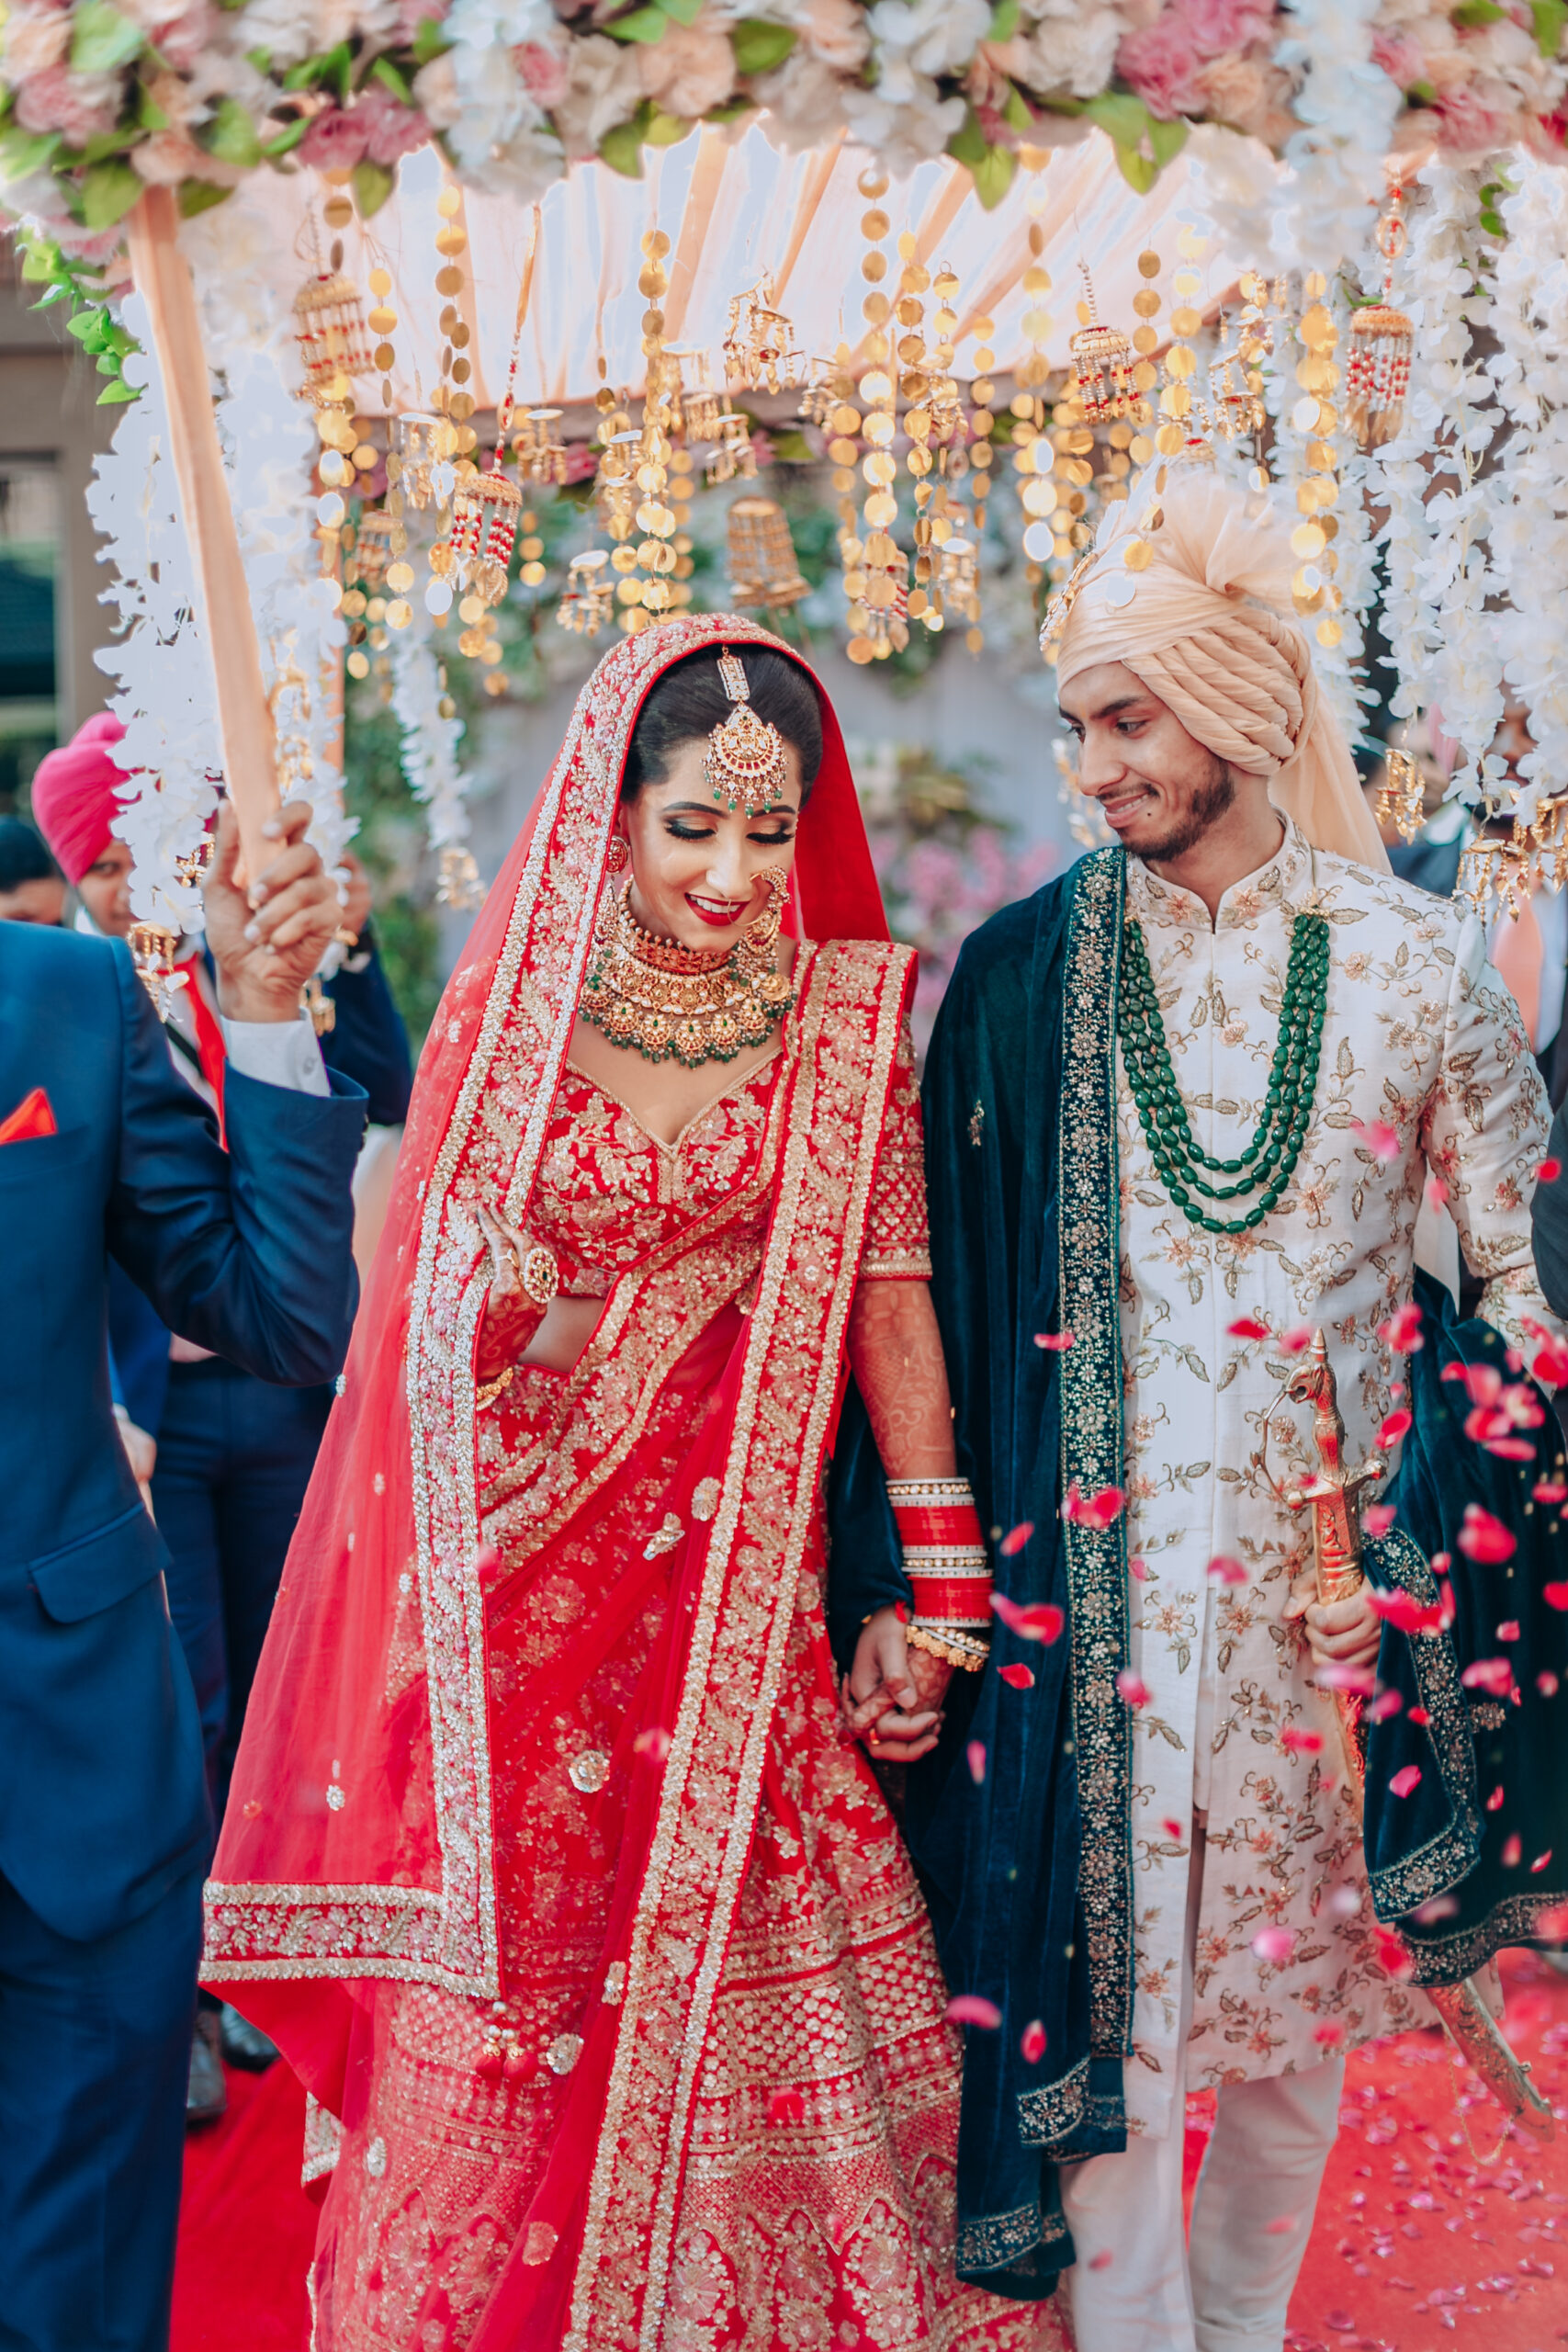 The Perfect Match Matrimony on LinkedIn: #indianwedding #wedding  #indianbride #bride #fashion #wedmegood…